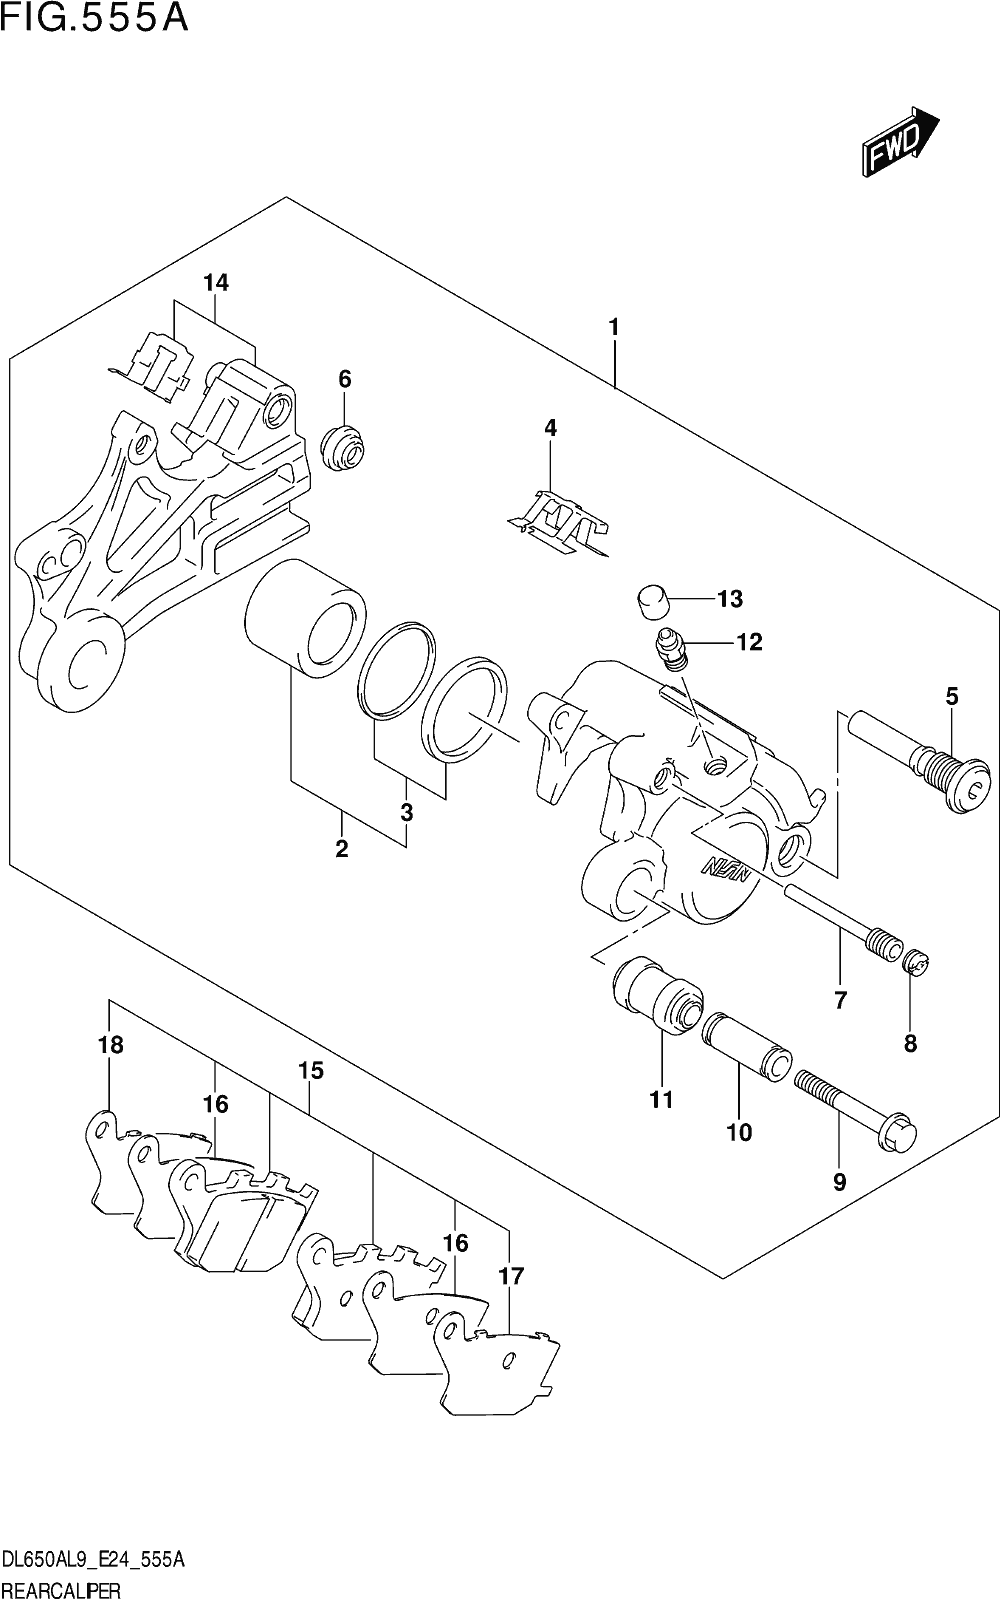 Fig.555a Rear Caliper